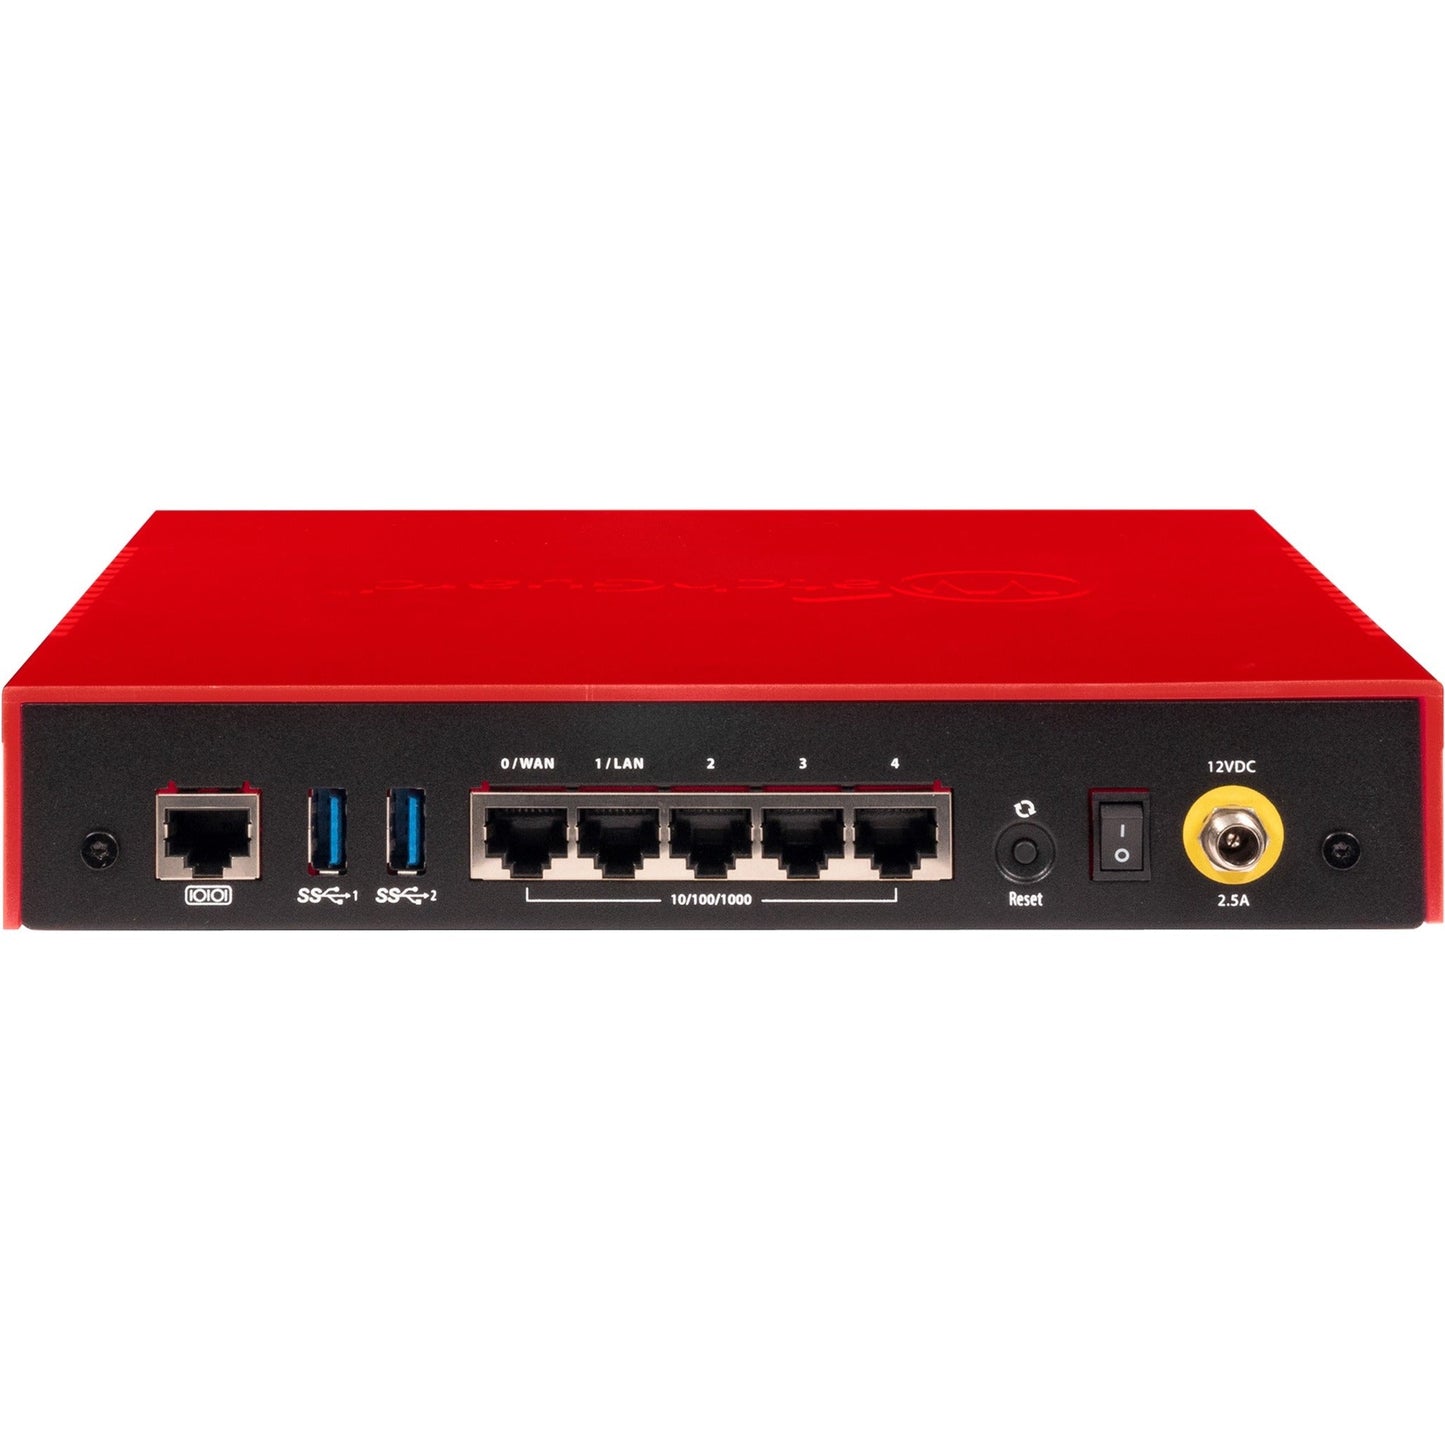 WatchGuard Firebox T20 Network Security/Firewall Appliance